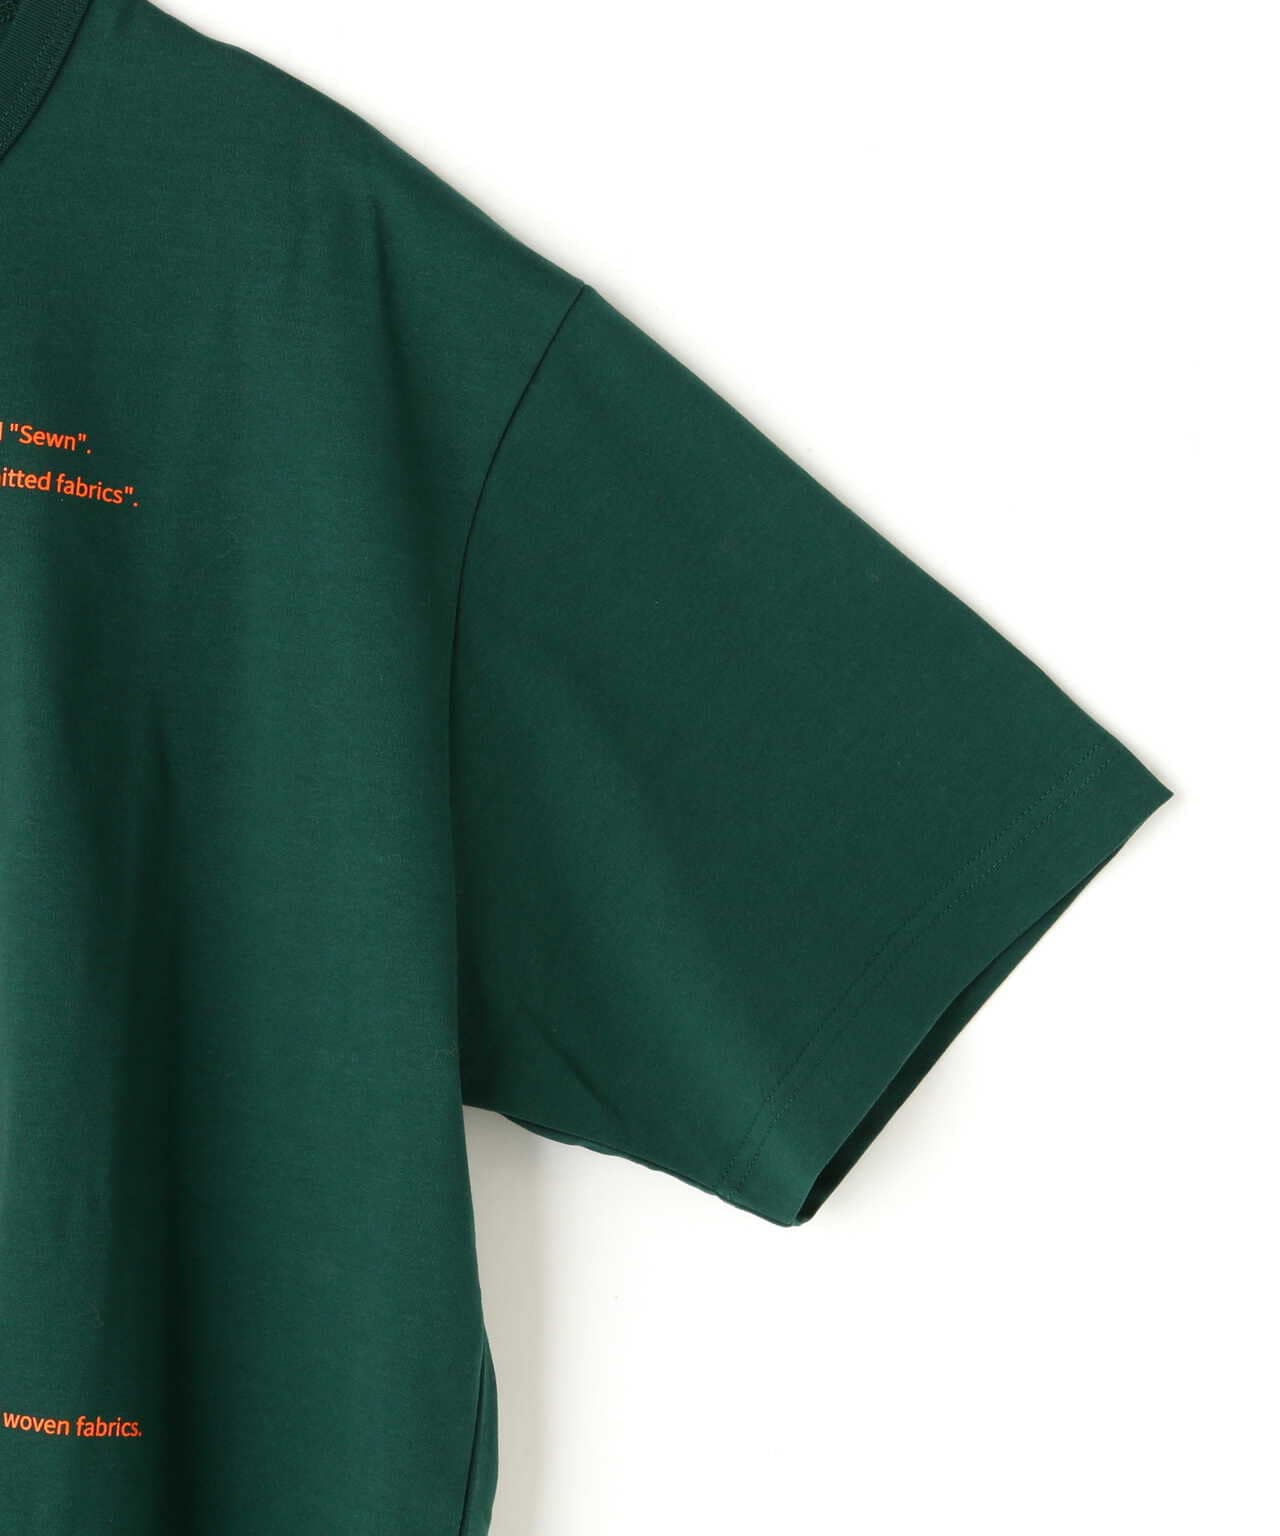 kolor/BEACON カラービーコン Tシャツ・カットソー 2(M位) 緑無しネック